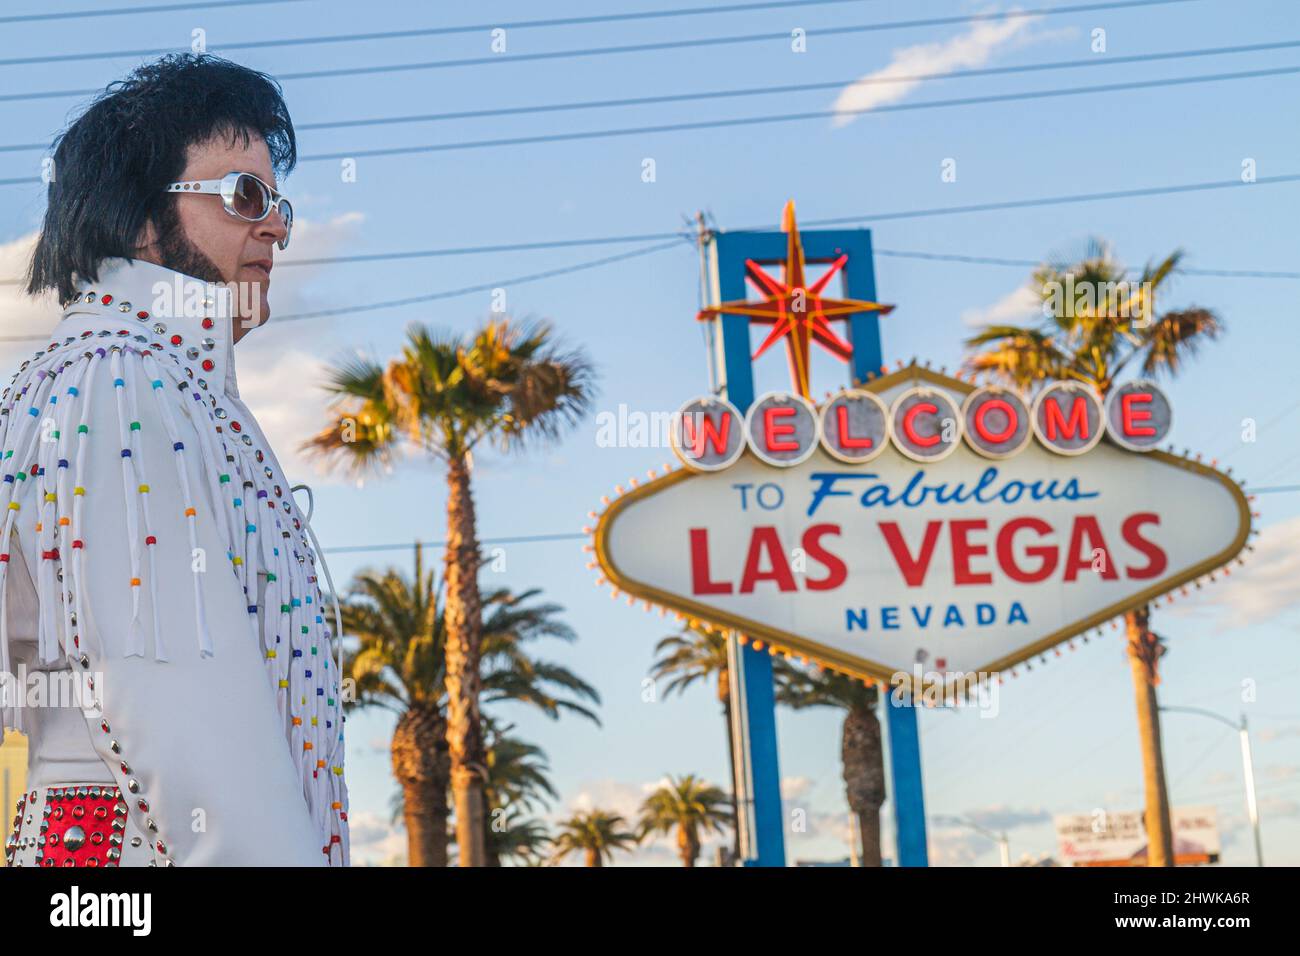 Las Vegas Nevada, South Las Vegas Boulevard Strip, Benvenuti al favoloso Las Vegas segno storico, uomo maschio Elvis Presley impersonatore celebrità look-simili Foto Stock